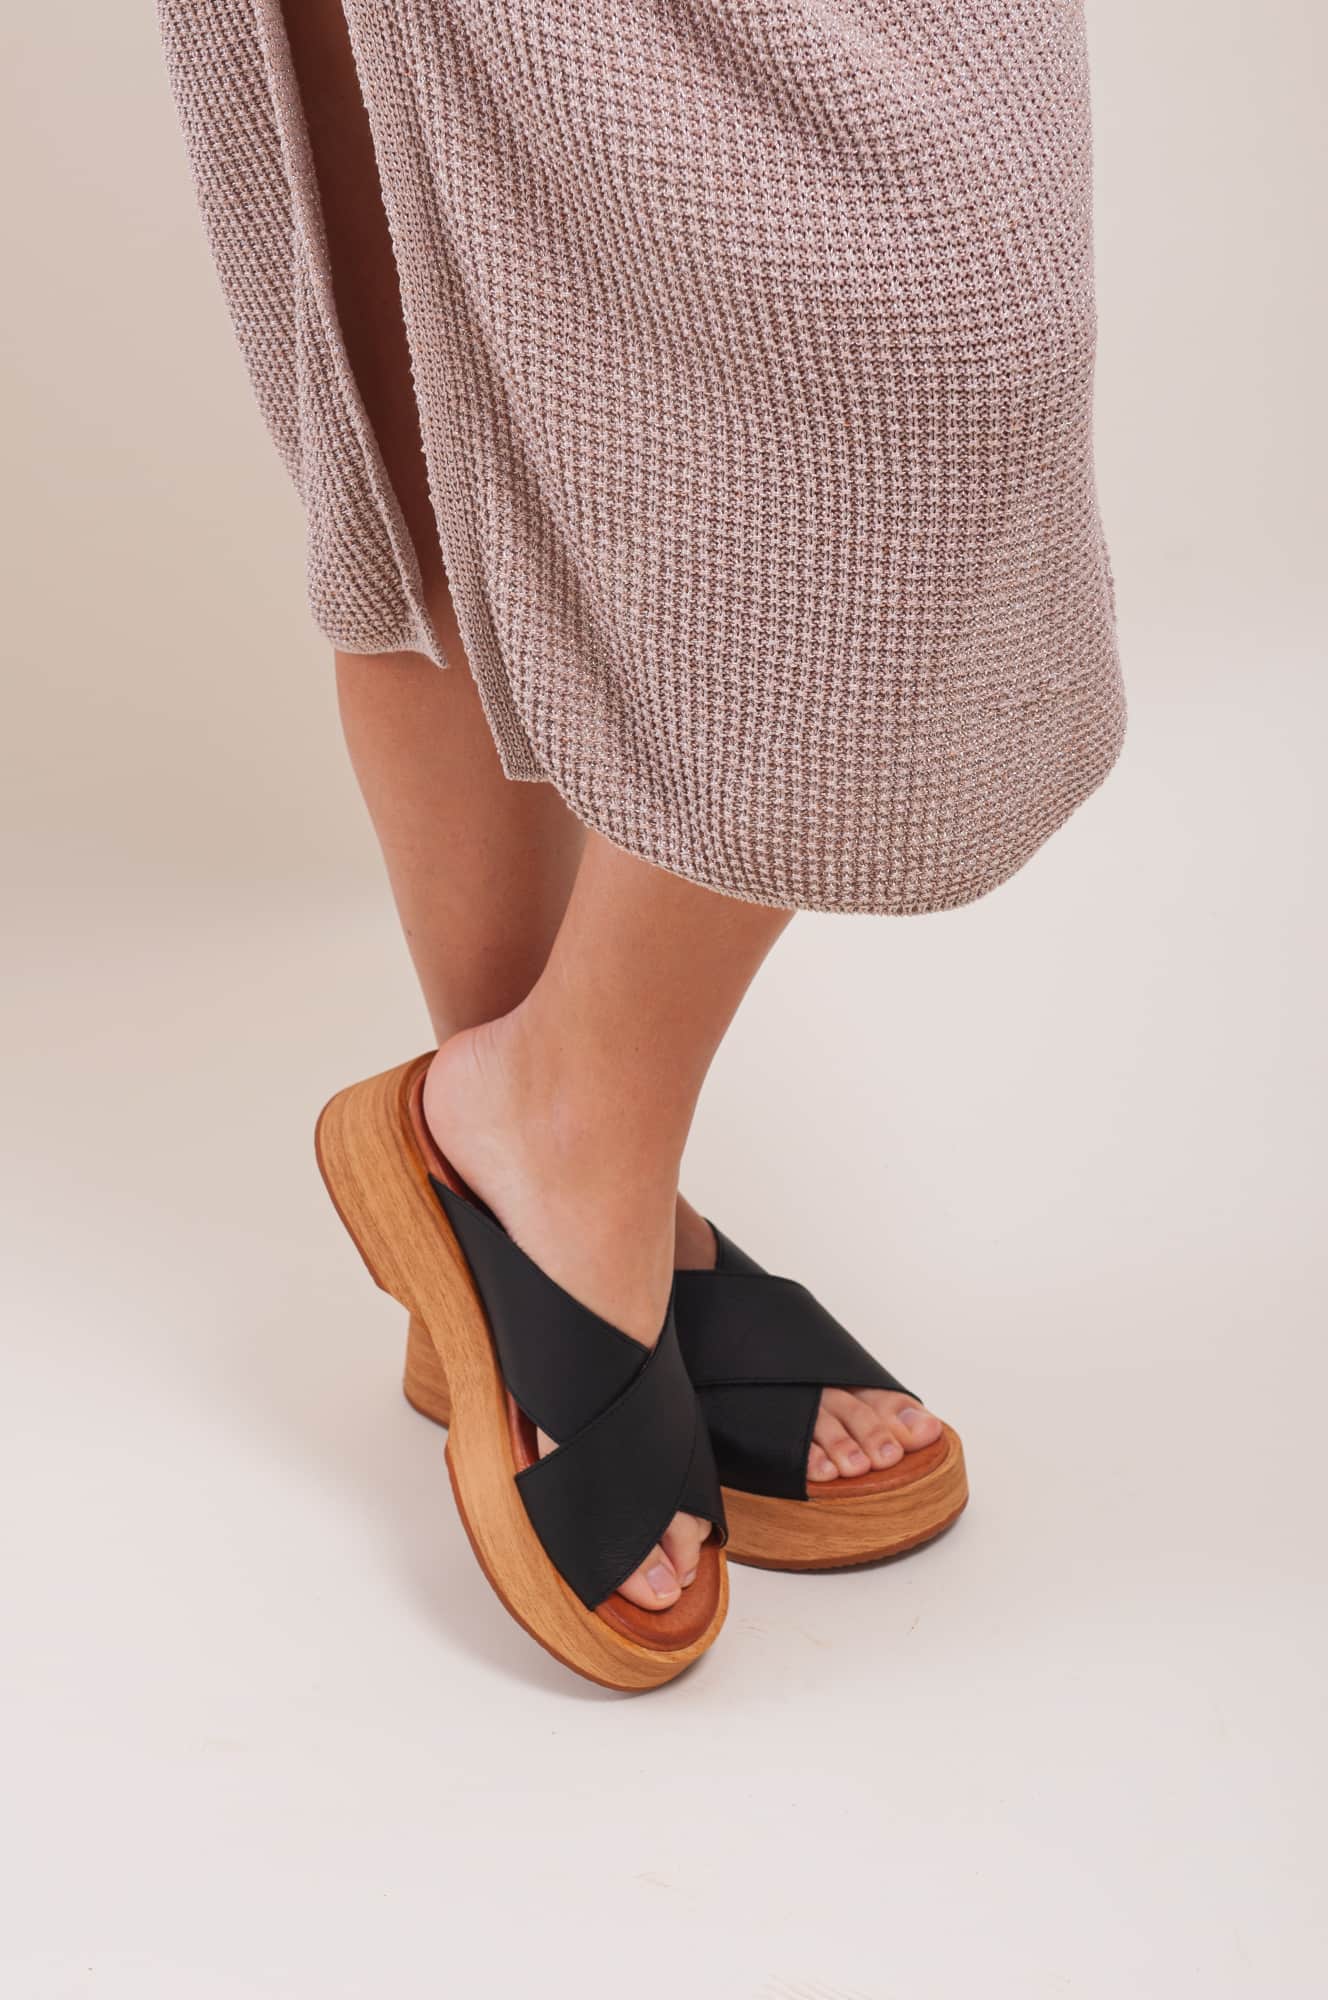 Sandalia negra de mujer. Sandalia de plataforma de piel natural. Sandalia cómoda y ligera